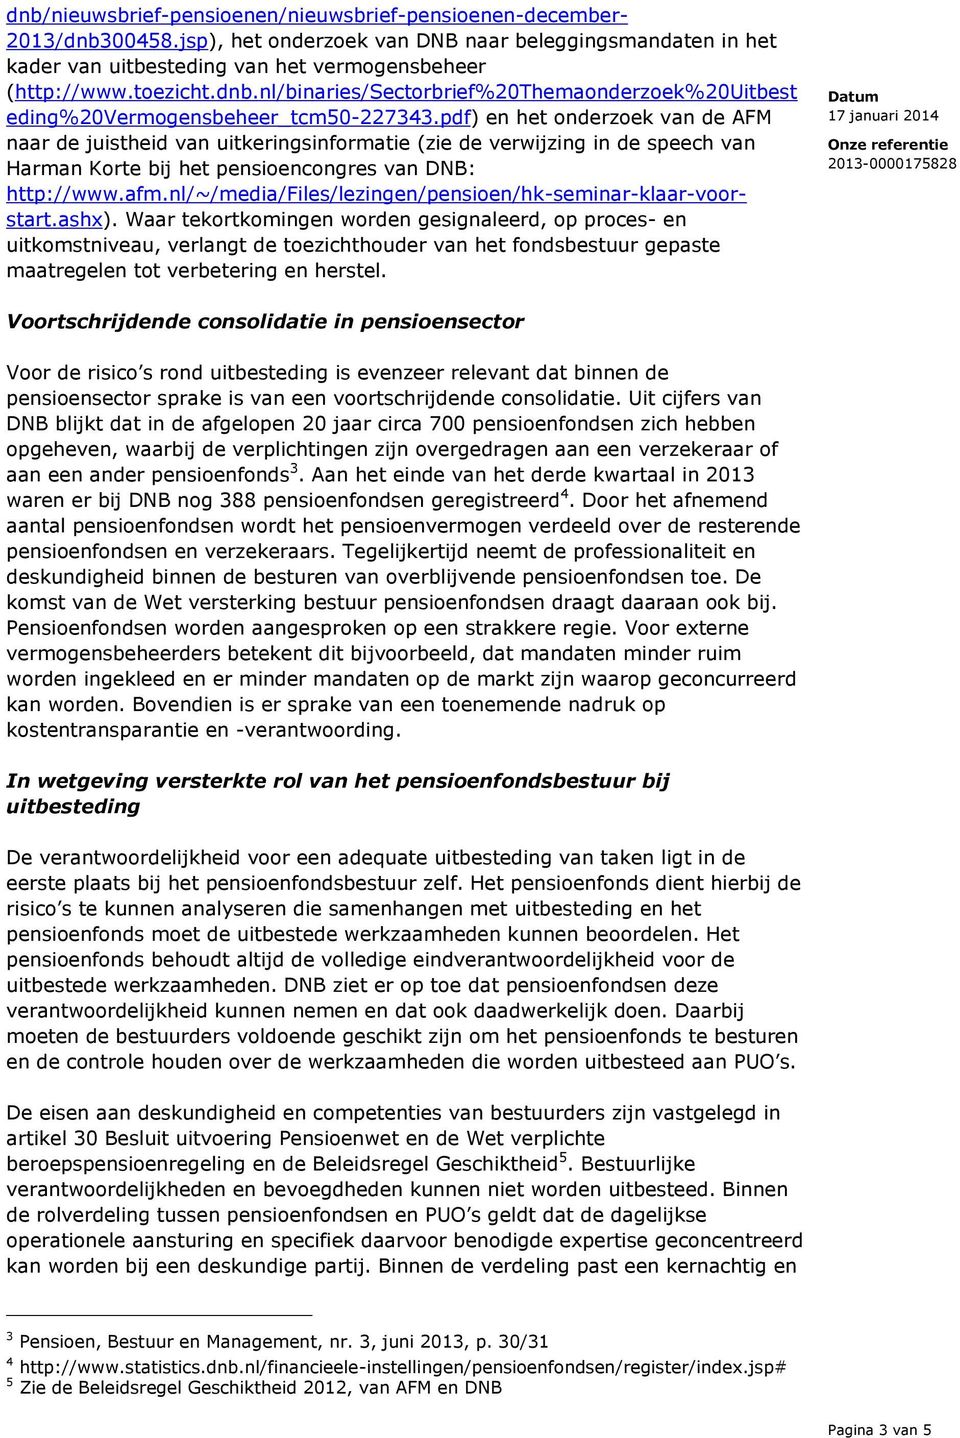 pdf) en het onderzoek van de AFM naar de juistheid van uitkeringsinformatie (zie de verwijzing in de speech van Harman Korte bij het pensioencongres van DNB: http://www.afm.